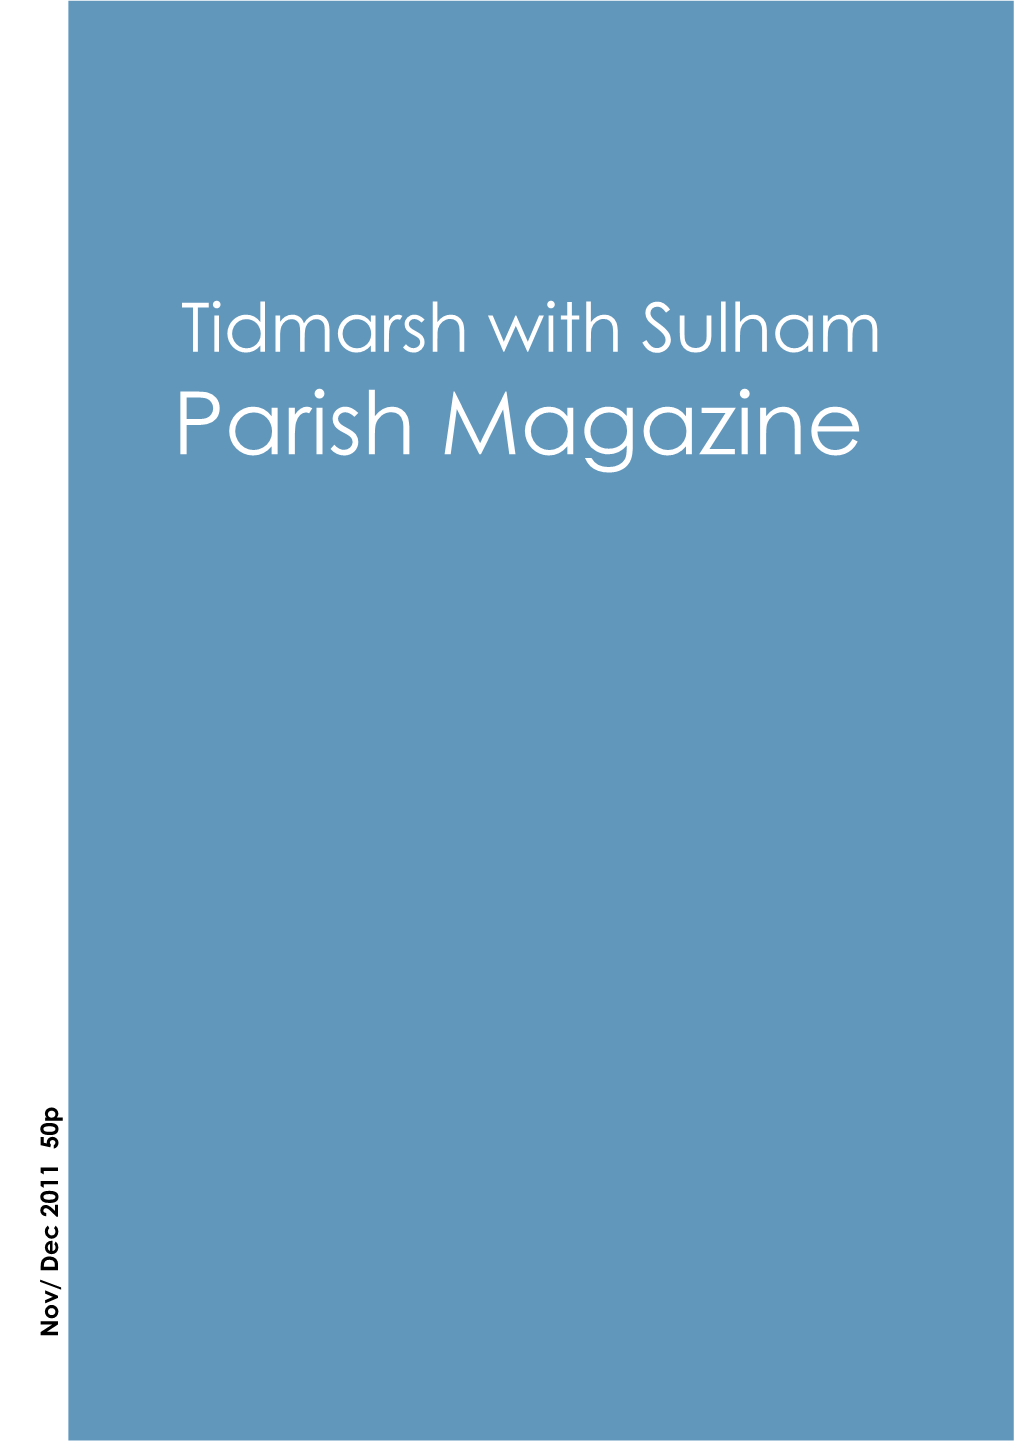 Parish Magazine